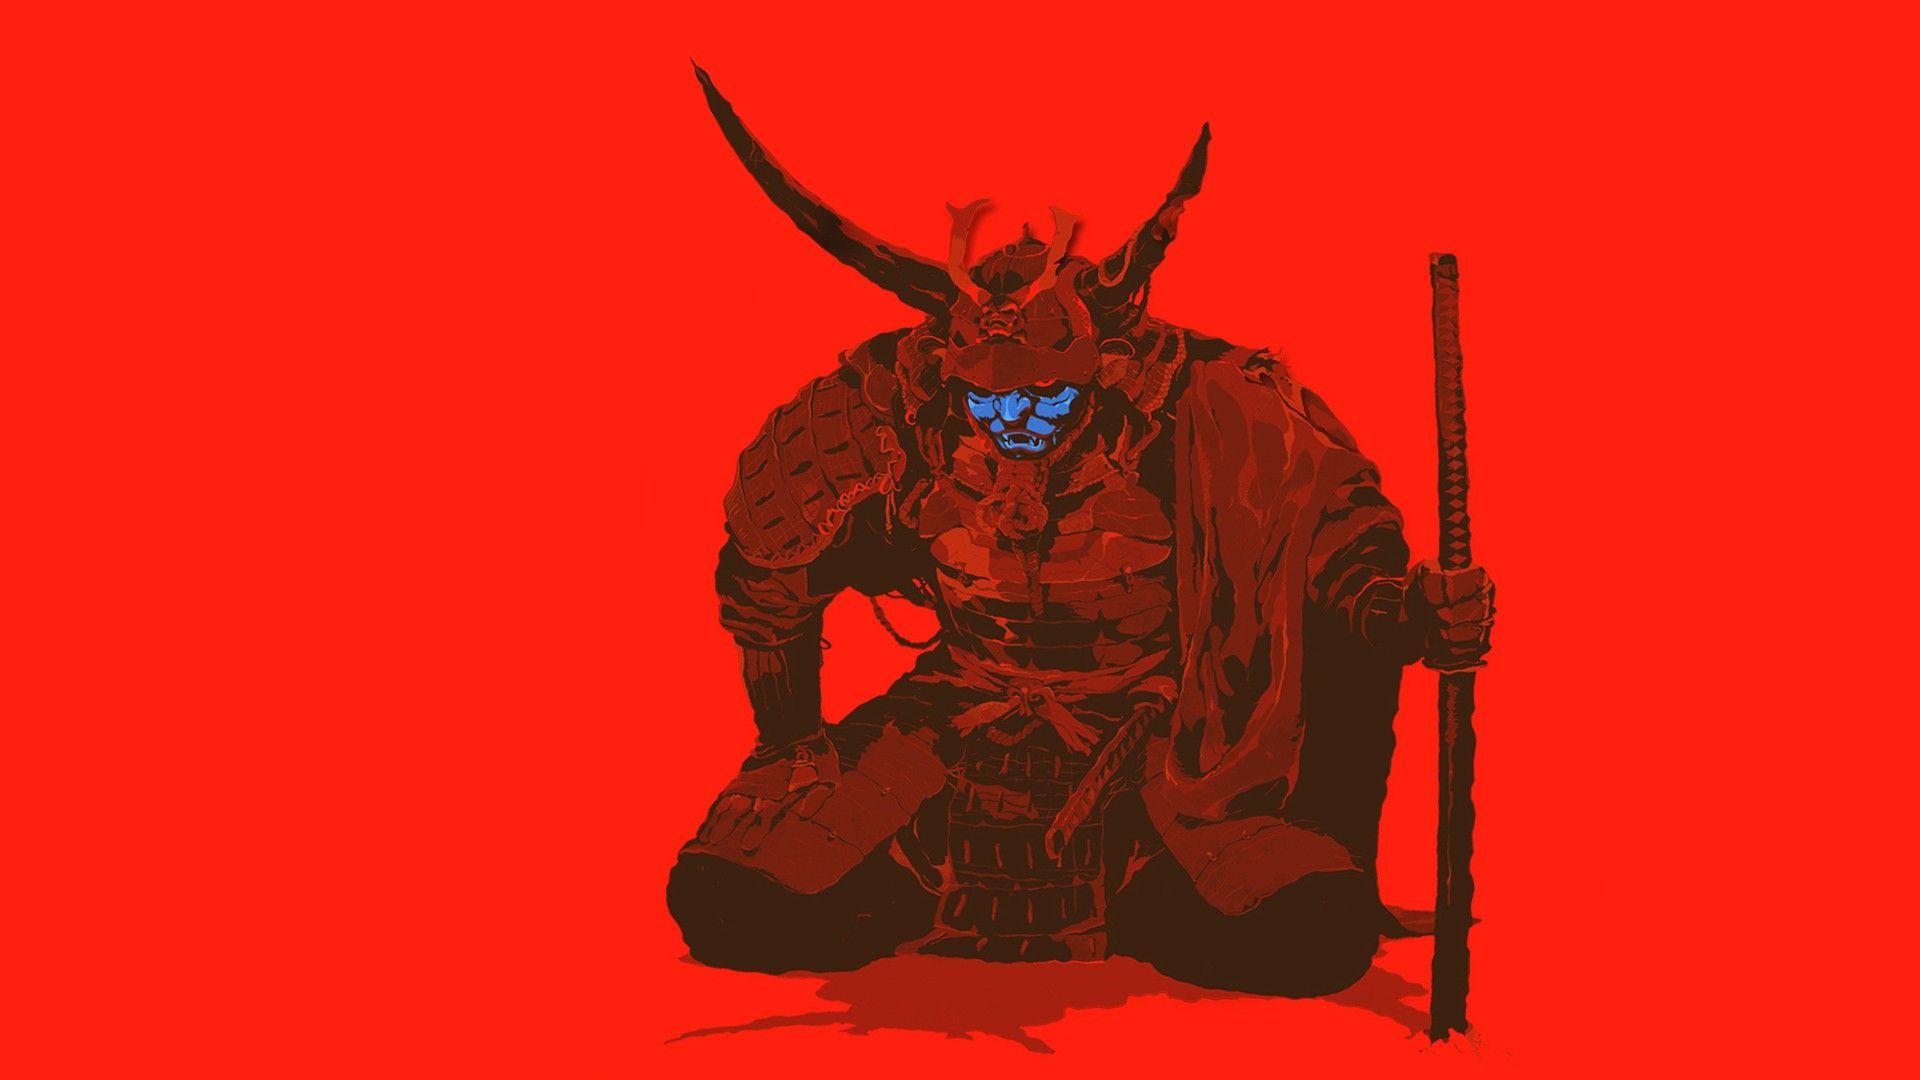 1920x1080 Hình nền: hình minh họa, Đỏ, Tác phẩm nghệ thuật, hoạt hình, Con quỷ, Samurai